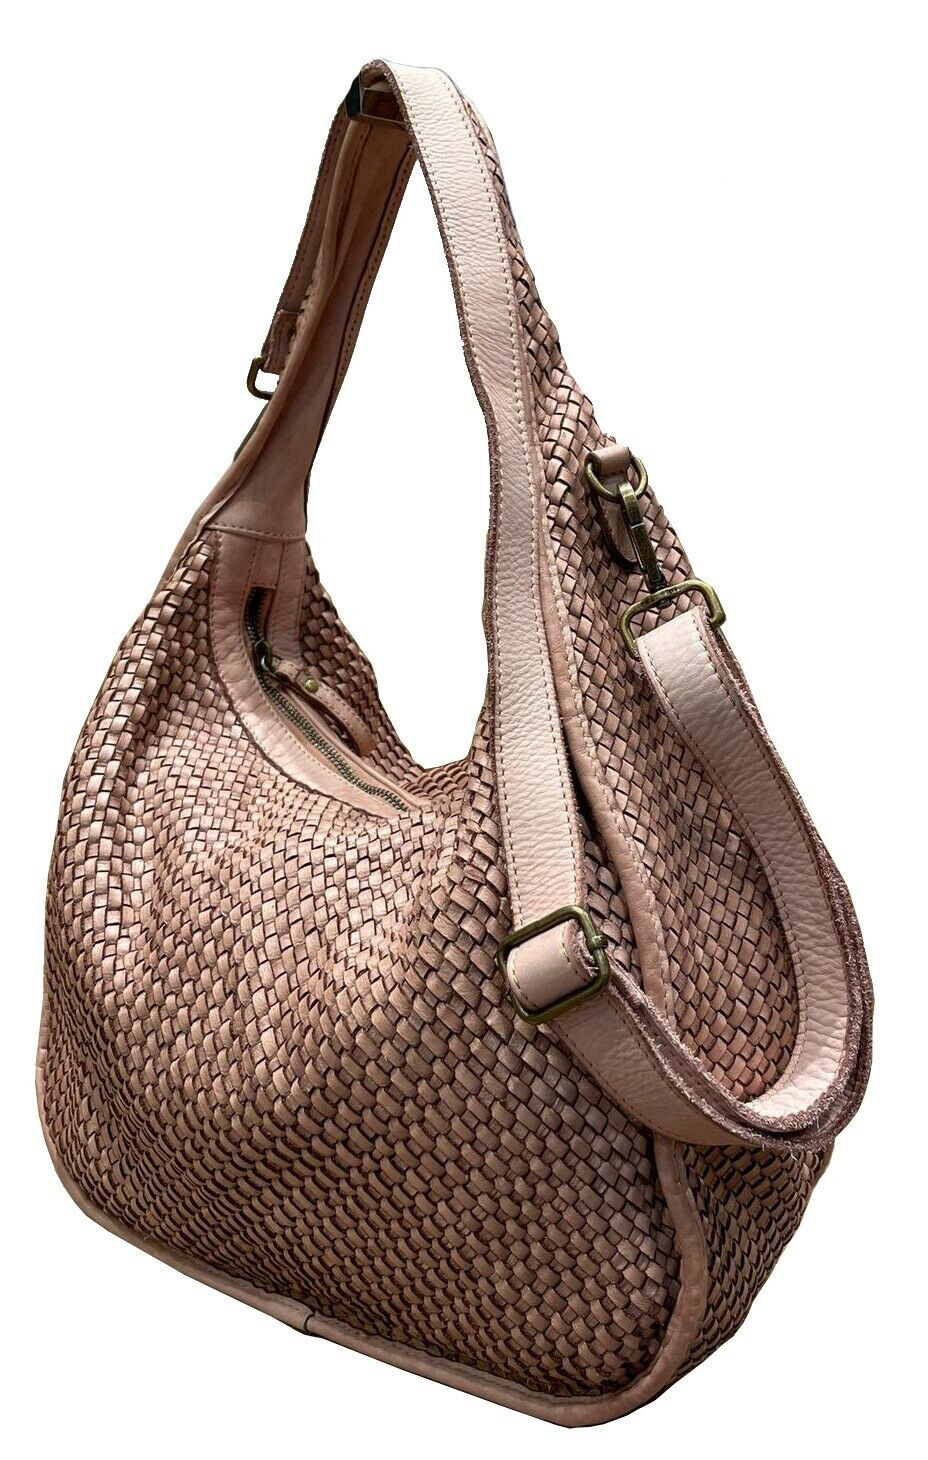 BZNA Bag Sanna Grau Italy Designer Handtasche Schultertasche Tasche Leder